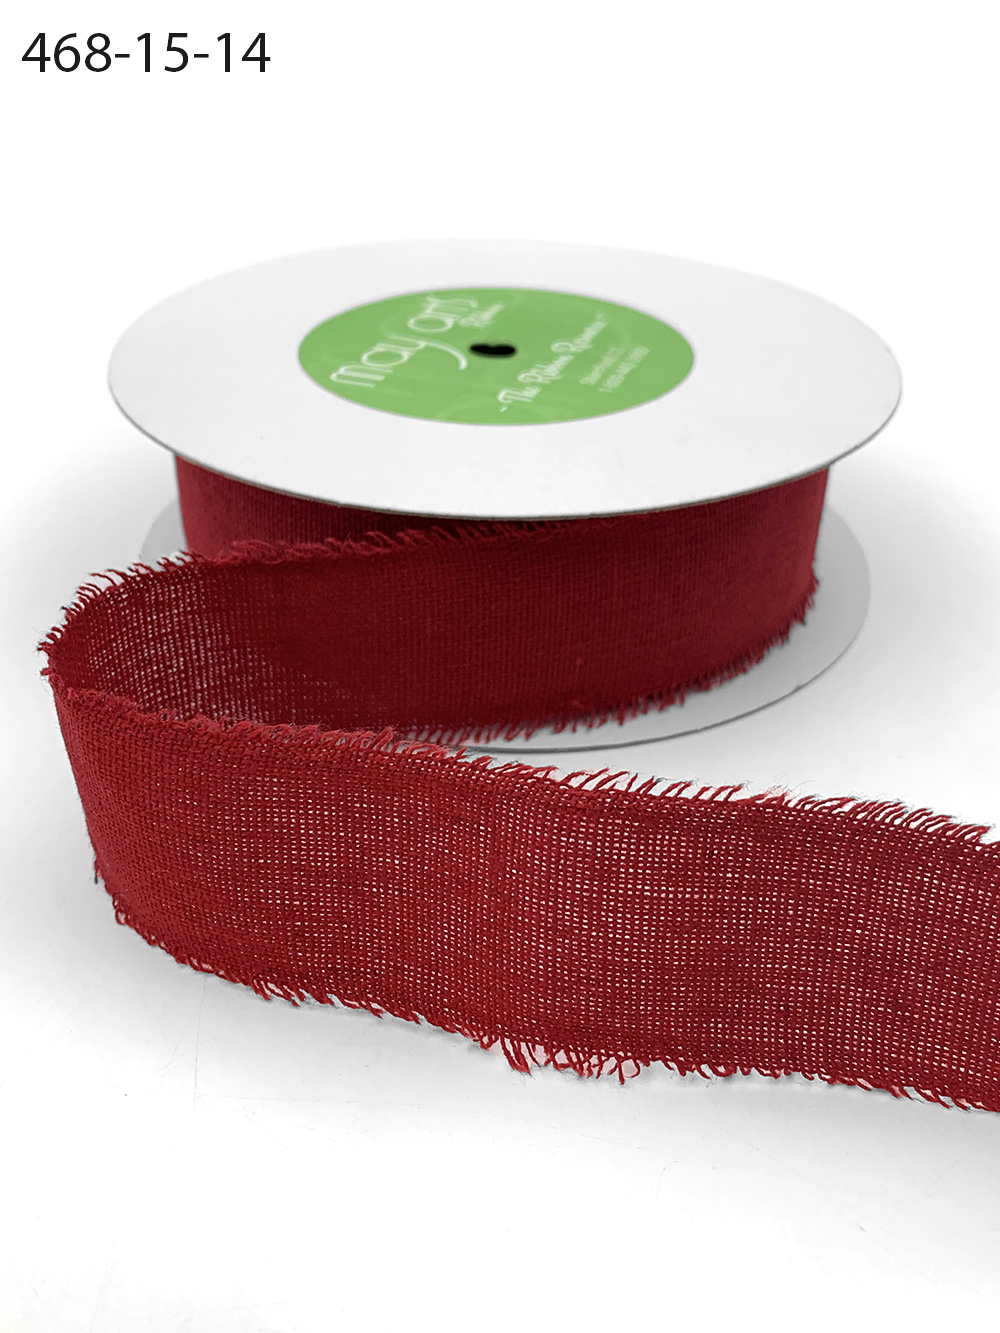 Ribbon - Cotton, Linen, Denim - Fringed Linen Ribbon - Striped Linen w/  Fringed Edge - Packaging Decor